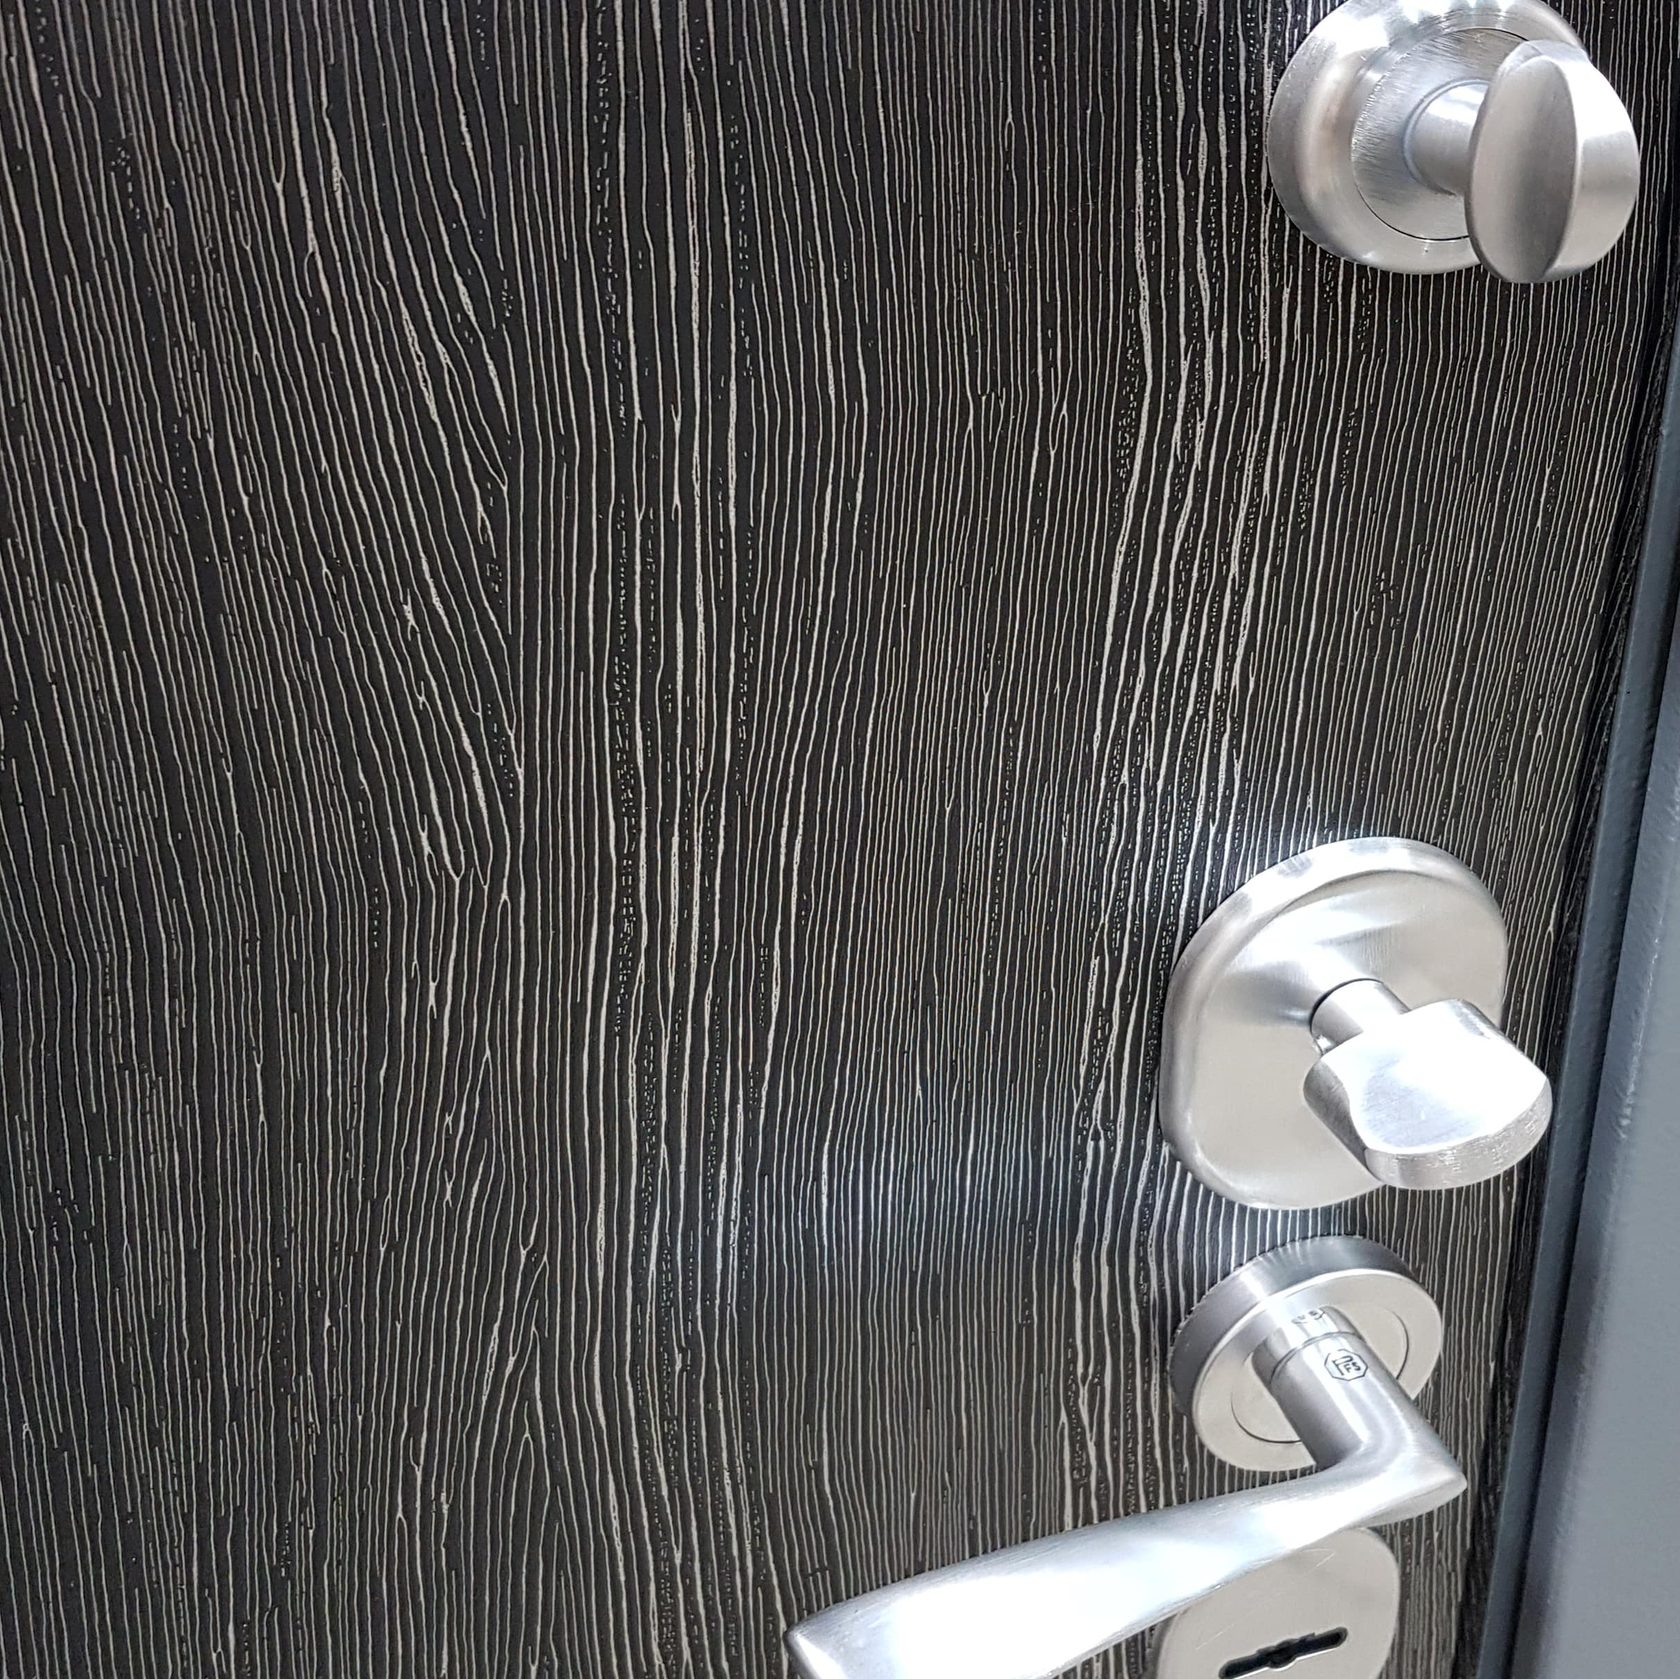 межкомнатные двери из мдф с покрытием пленкой пвх